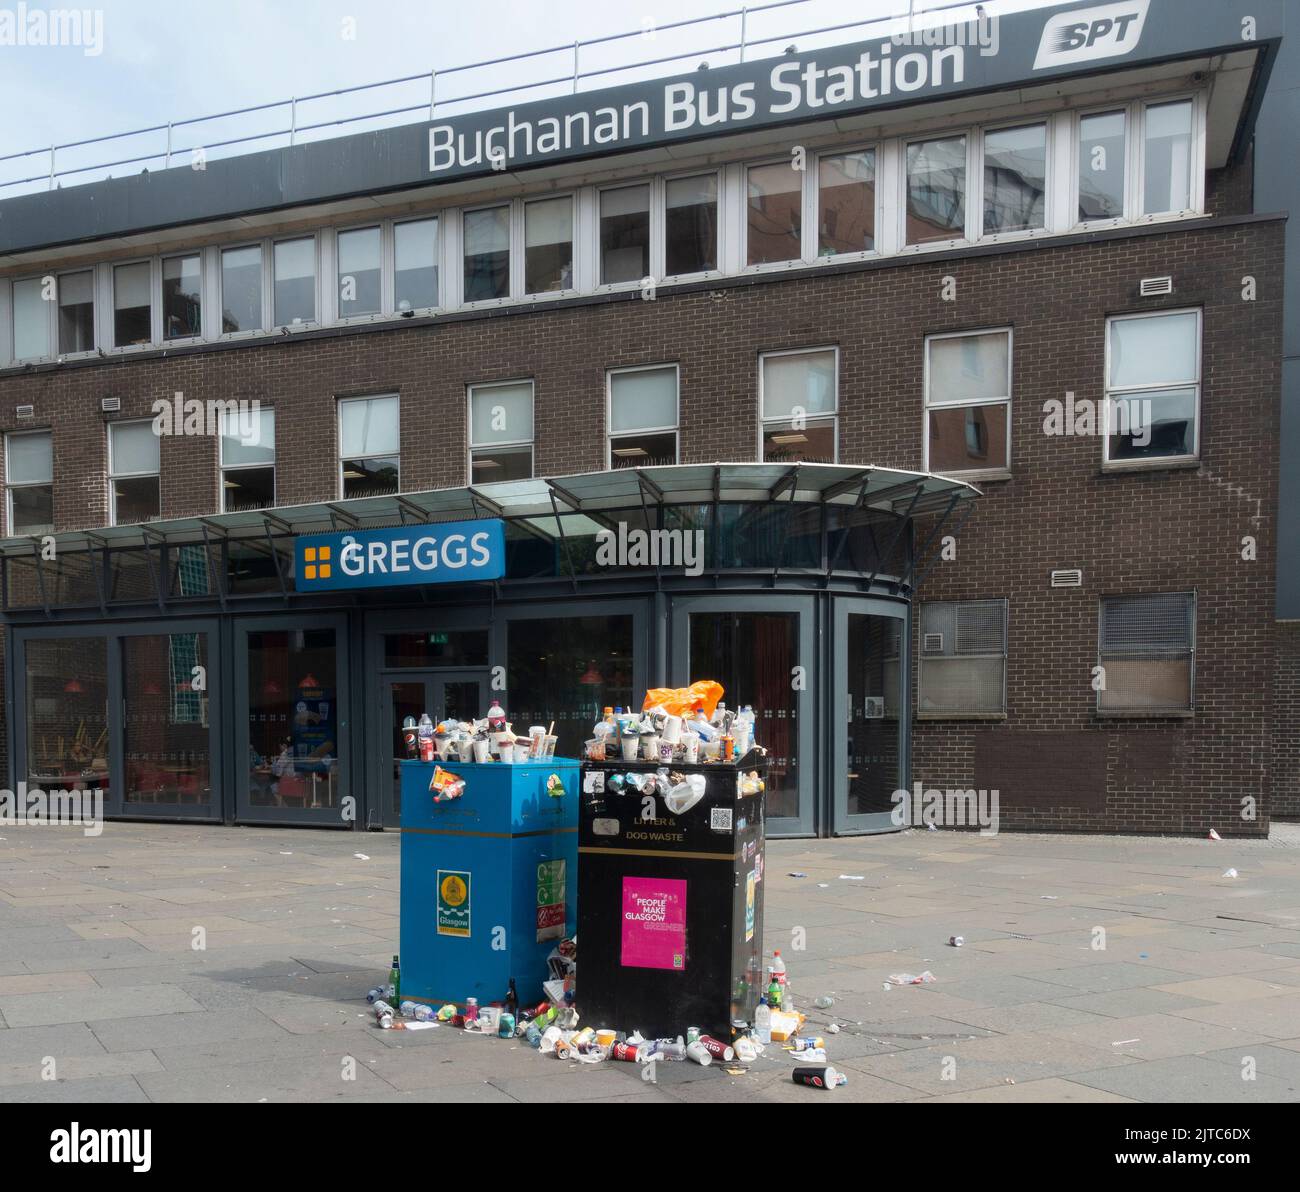 Rebosantes contenedores de basura en el pavimento fuera de la estación de autobuses de Buchanan, Glasgow, durante una huelga de los recolectores de basura del Consejo. Foto de stock